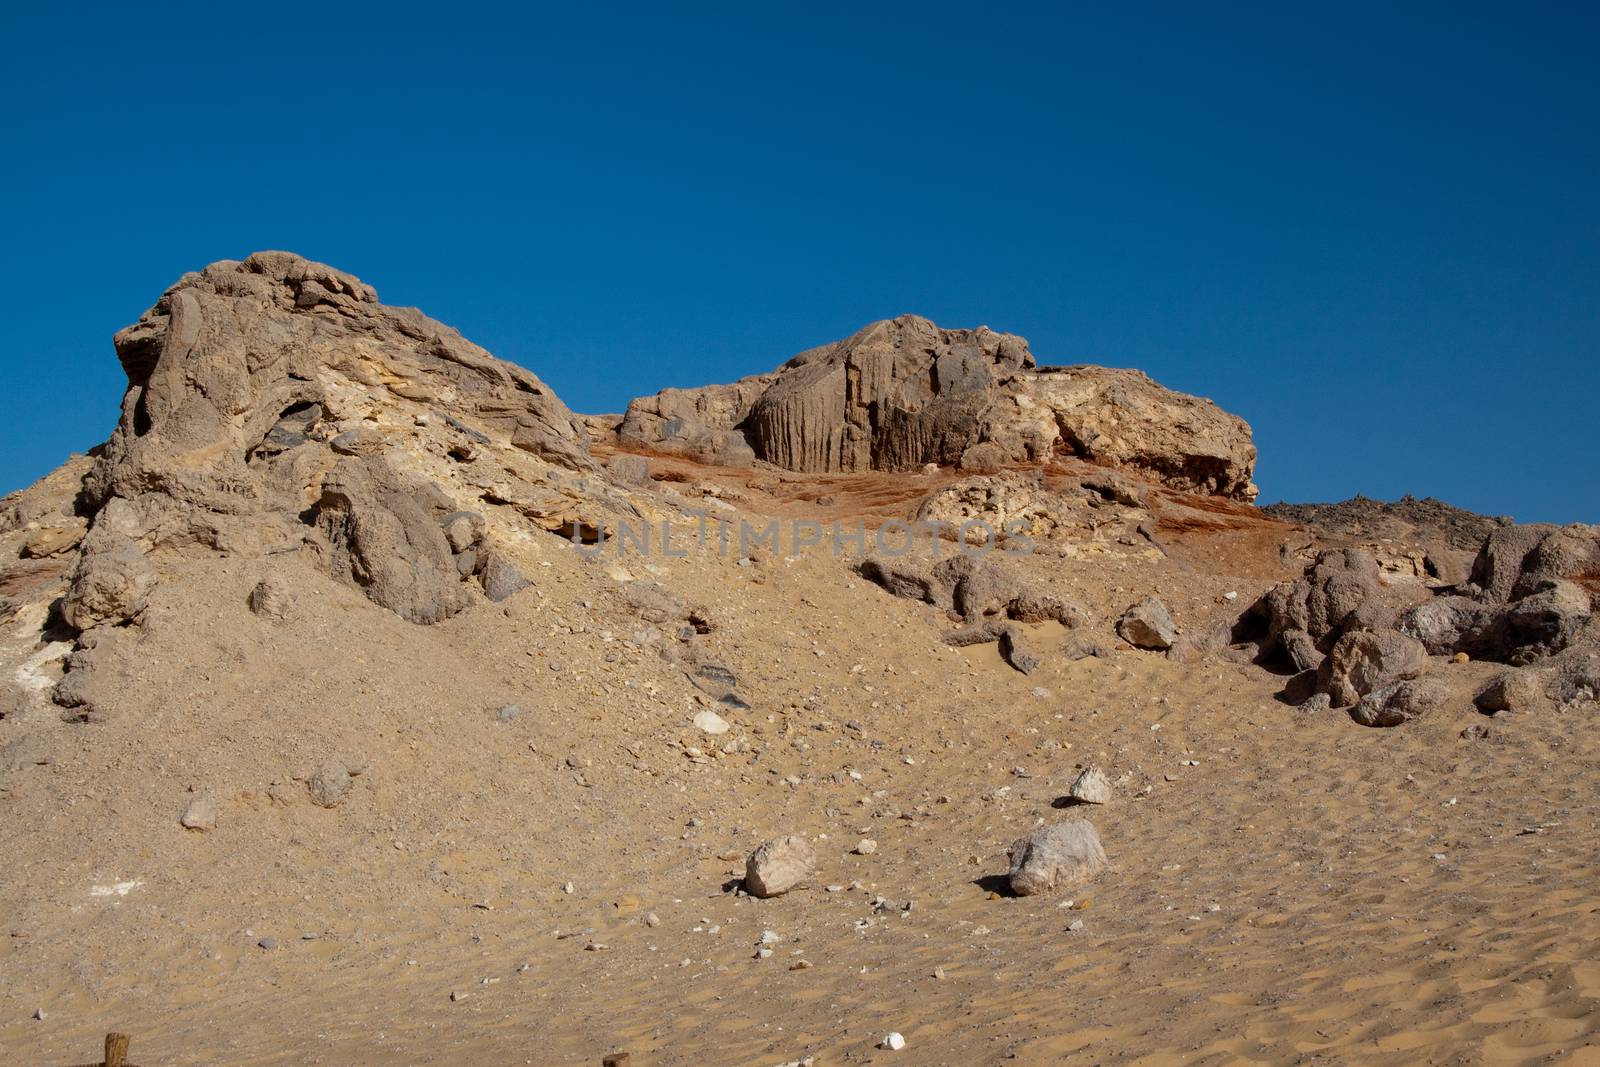 Crystal mountain in White desert,Egypt